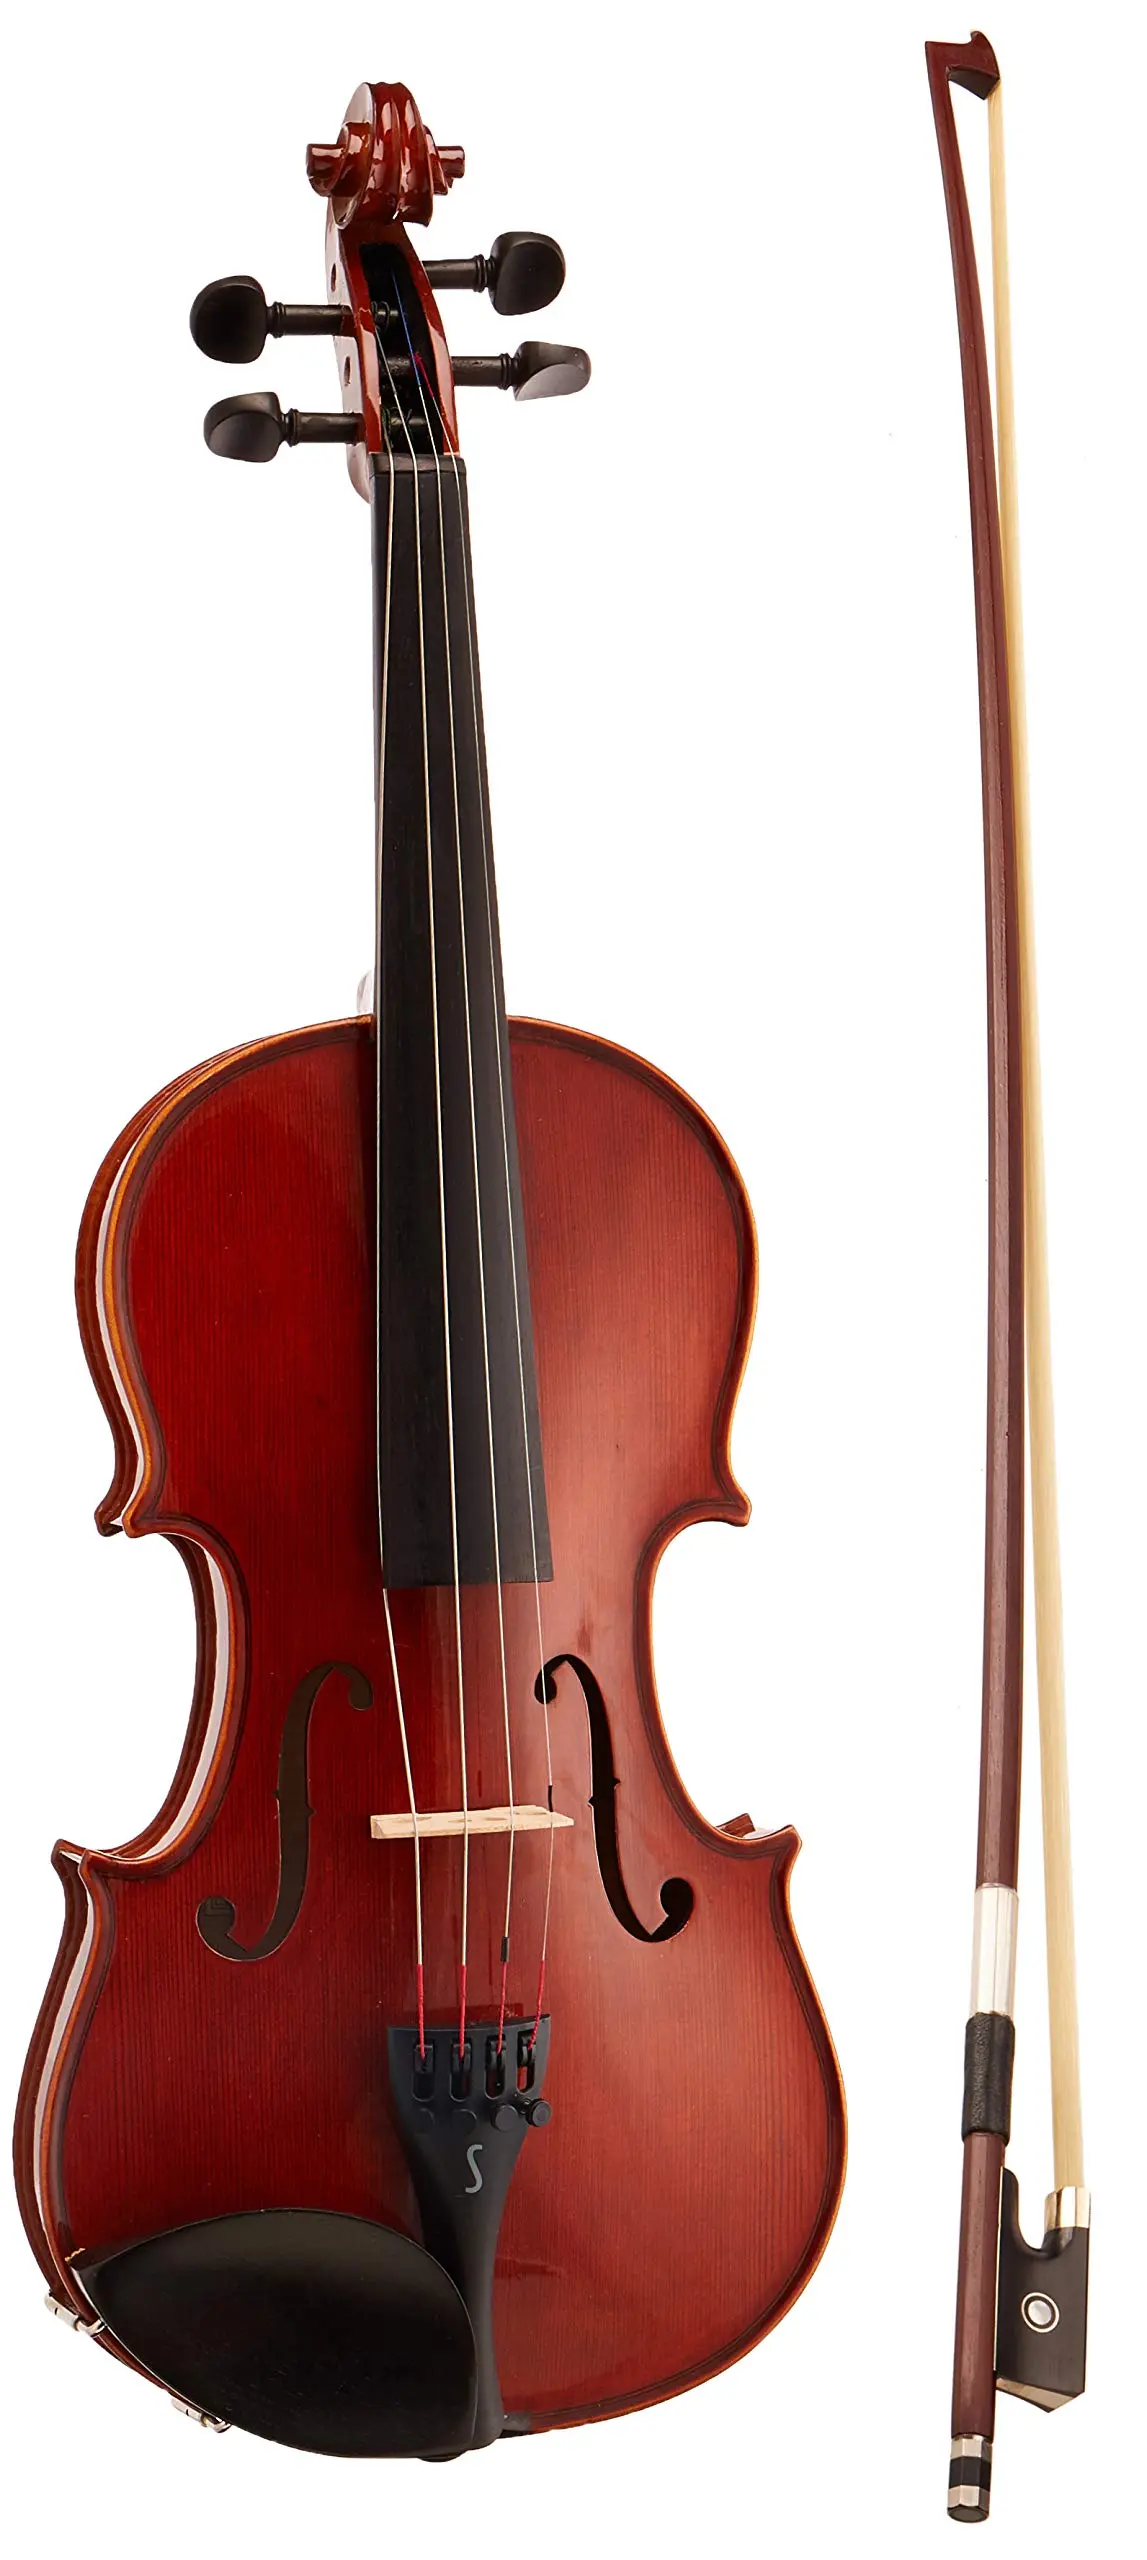 violin barato - Es bueno un violín de 100 dólares